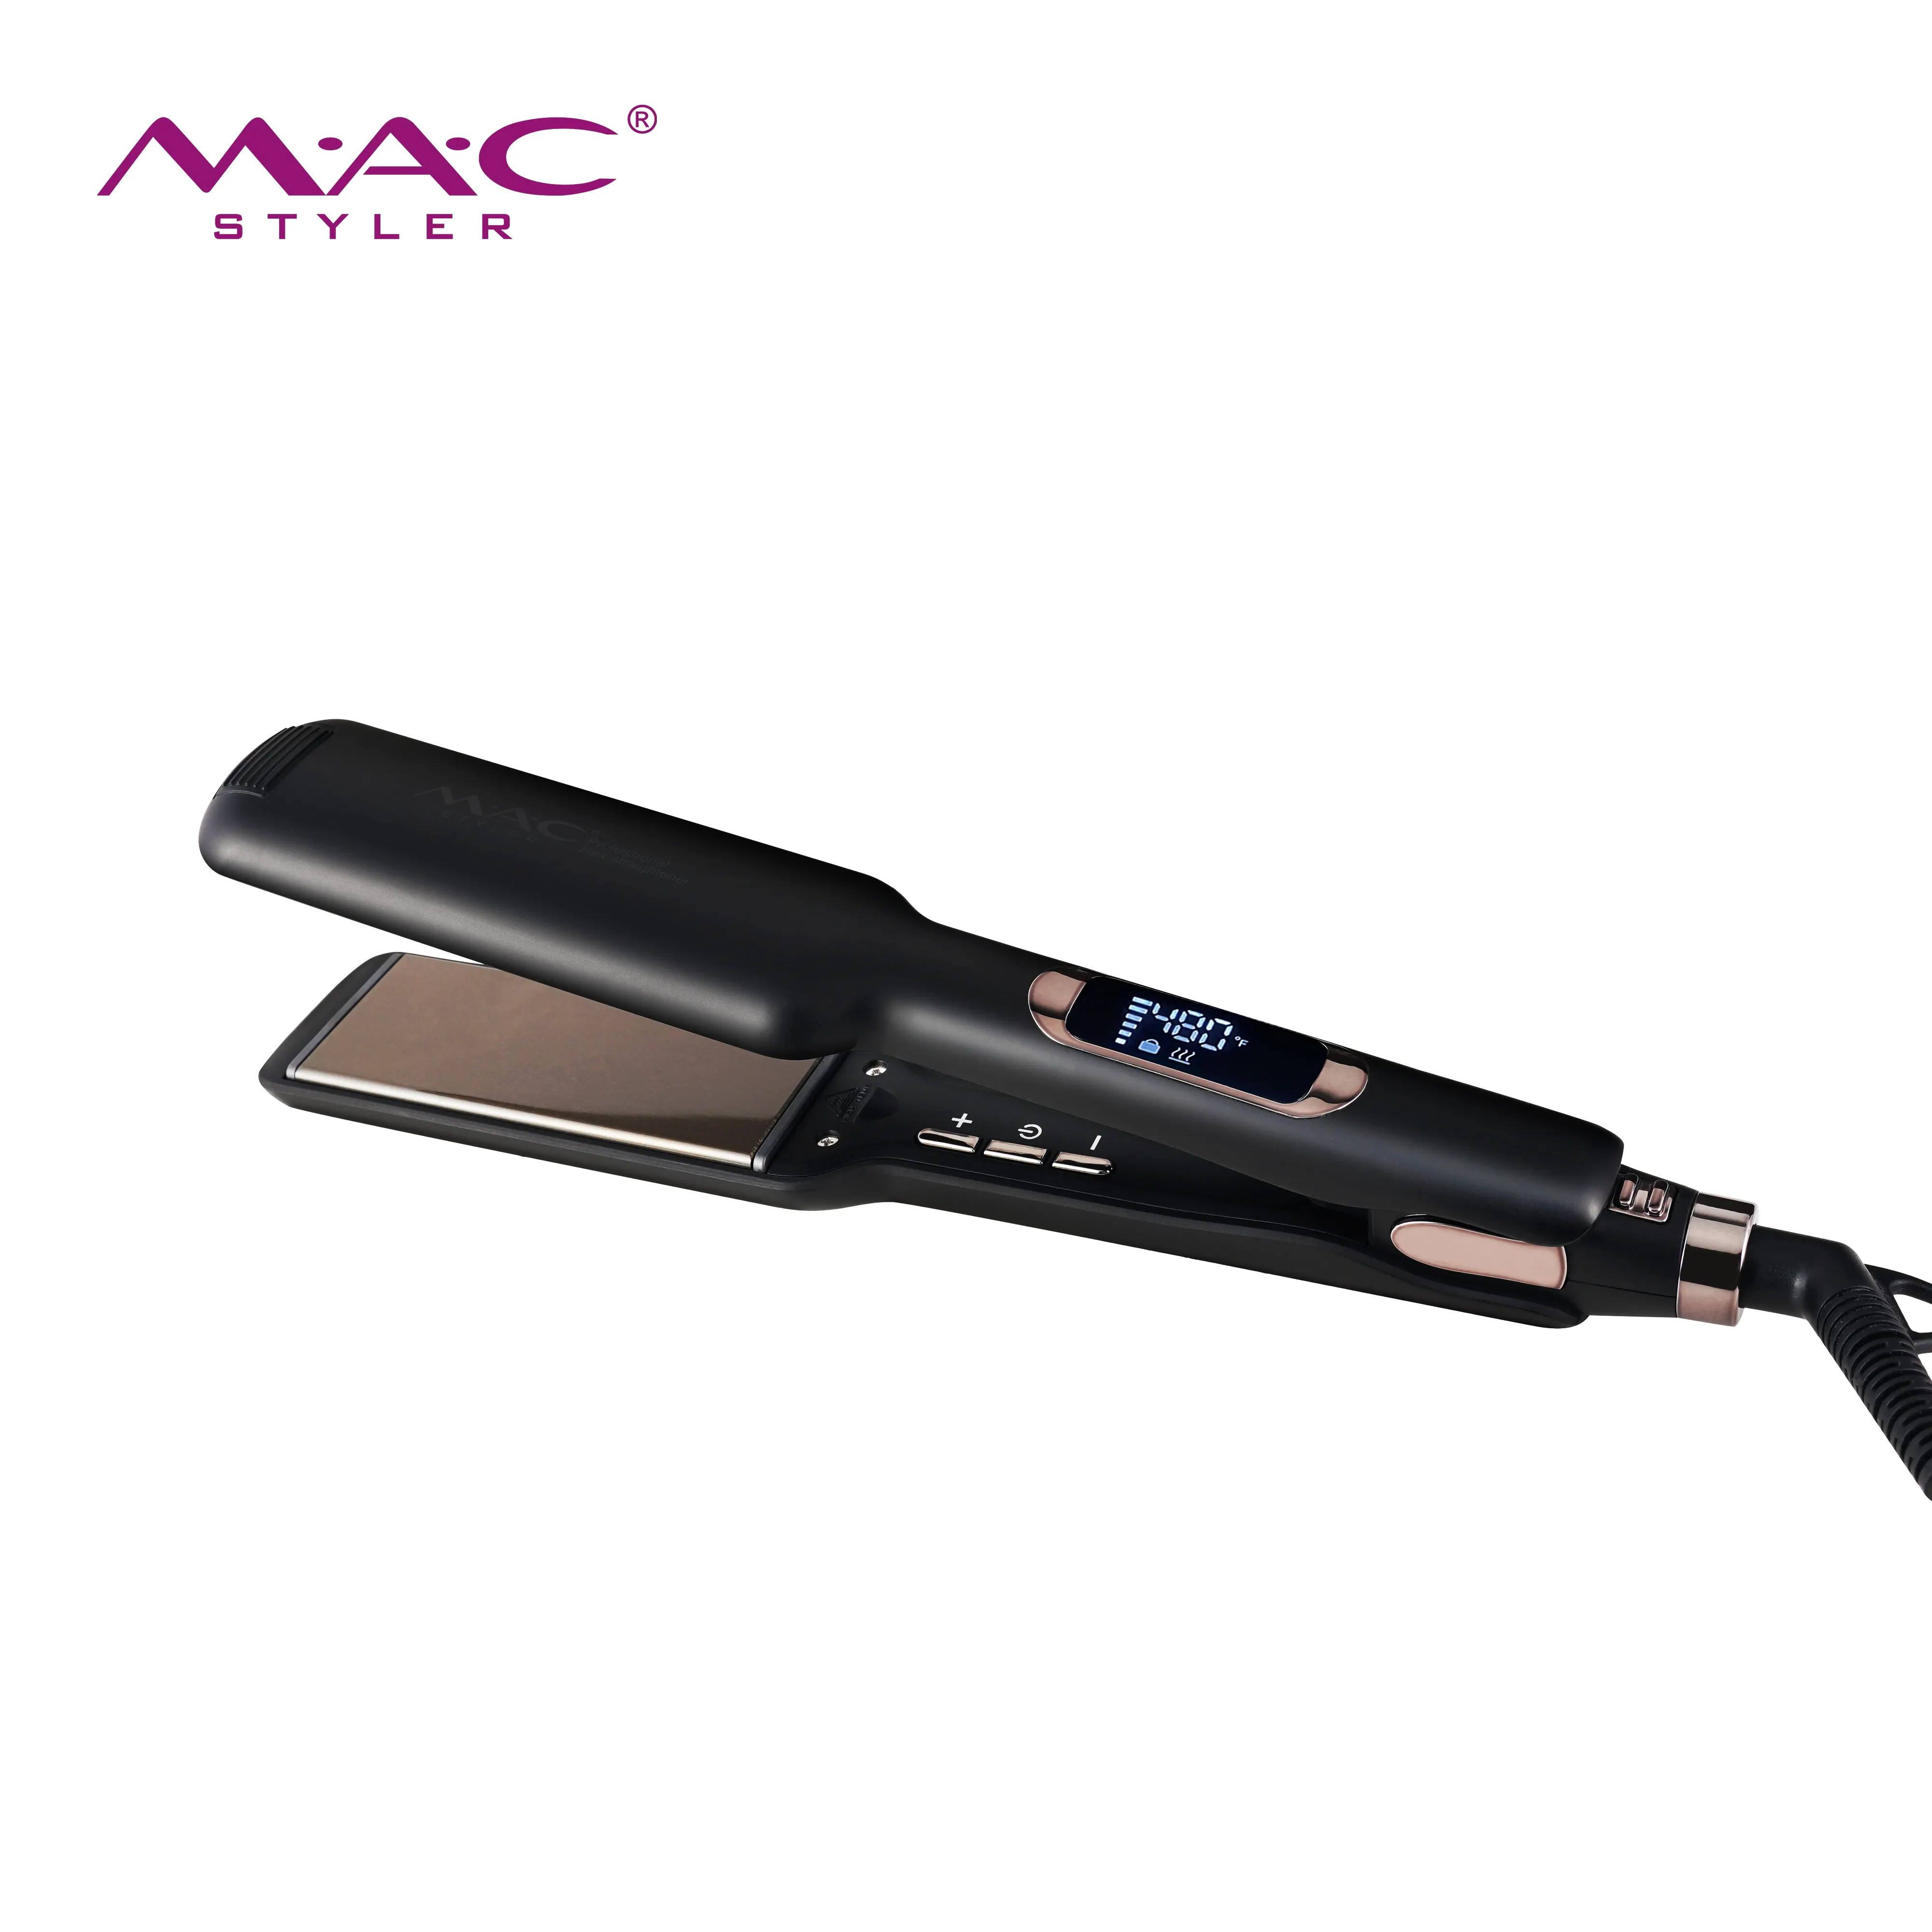 MAC Styler riscaldamento rapido 480F ferro piatto largo titanio Planchas De Cabello professionale Pro piastra per capelli cheratina